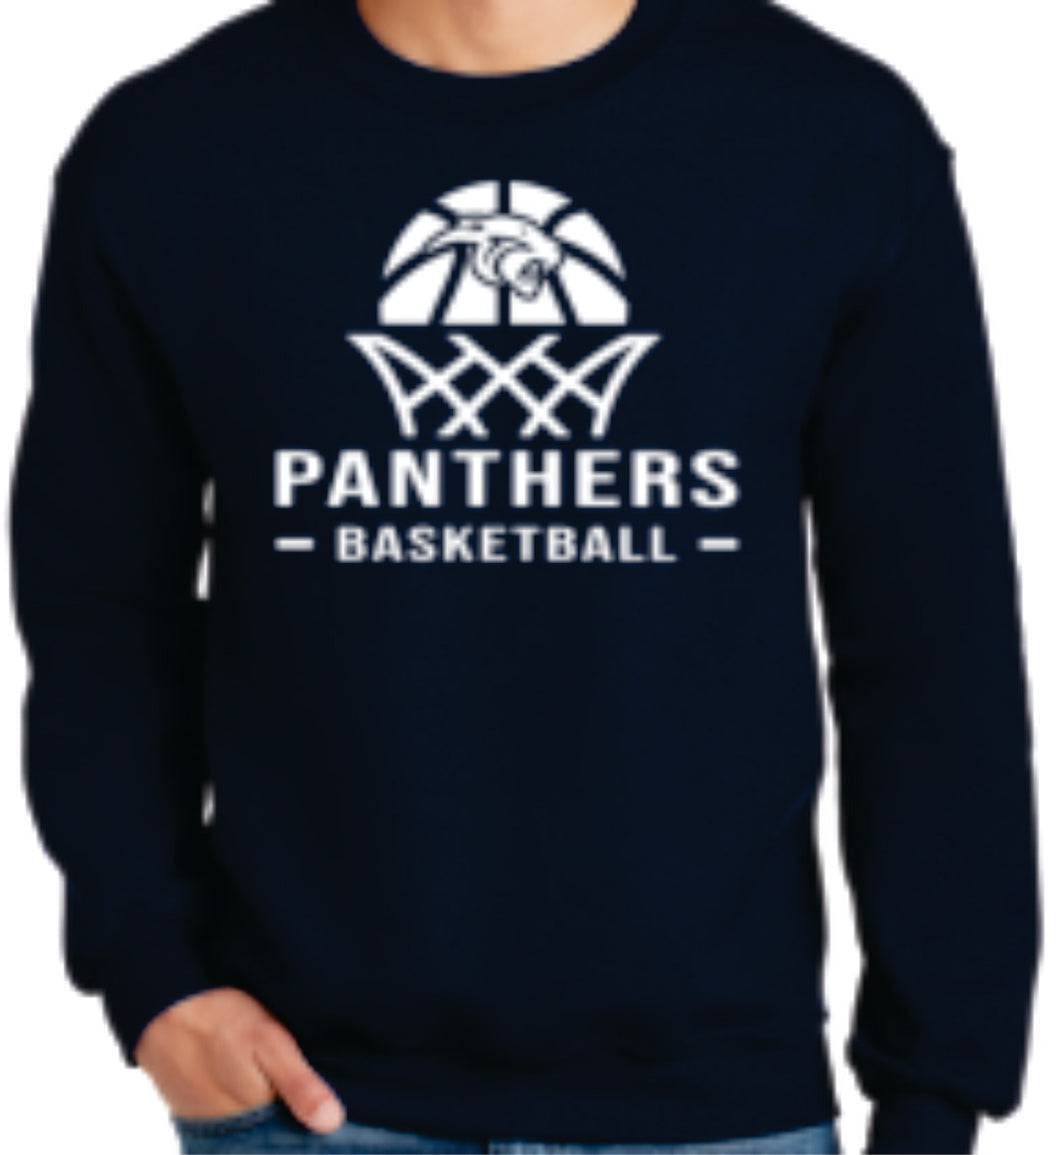 Panthers Crewneck Sweater